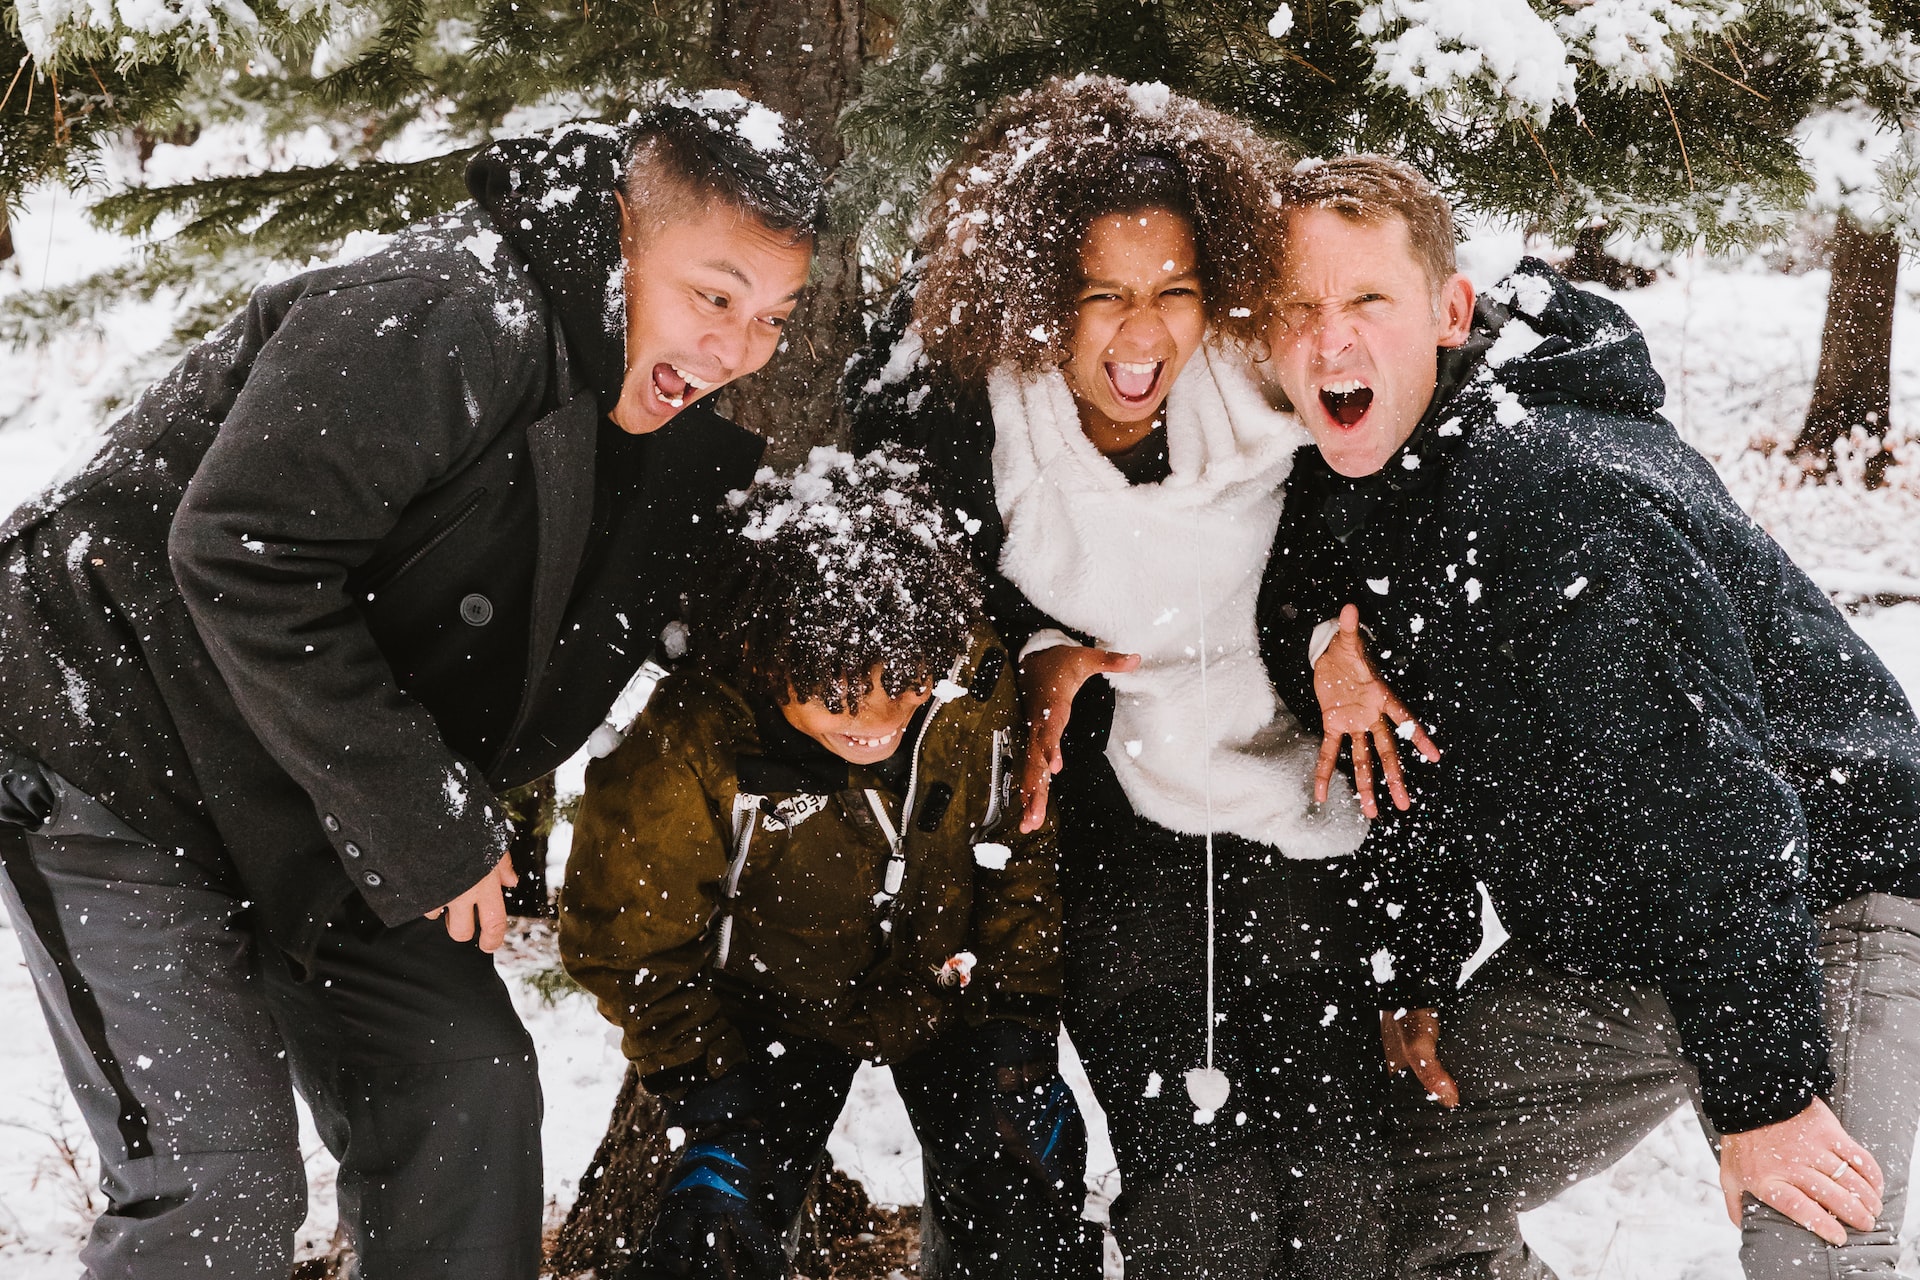 15 Best Winter Activities To Do In Orange County